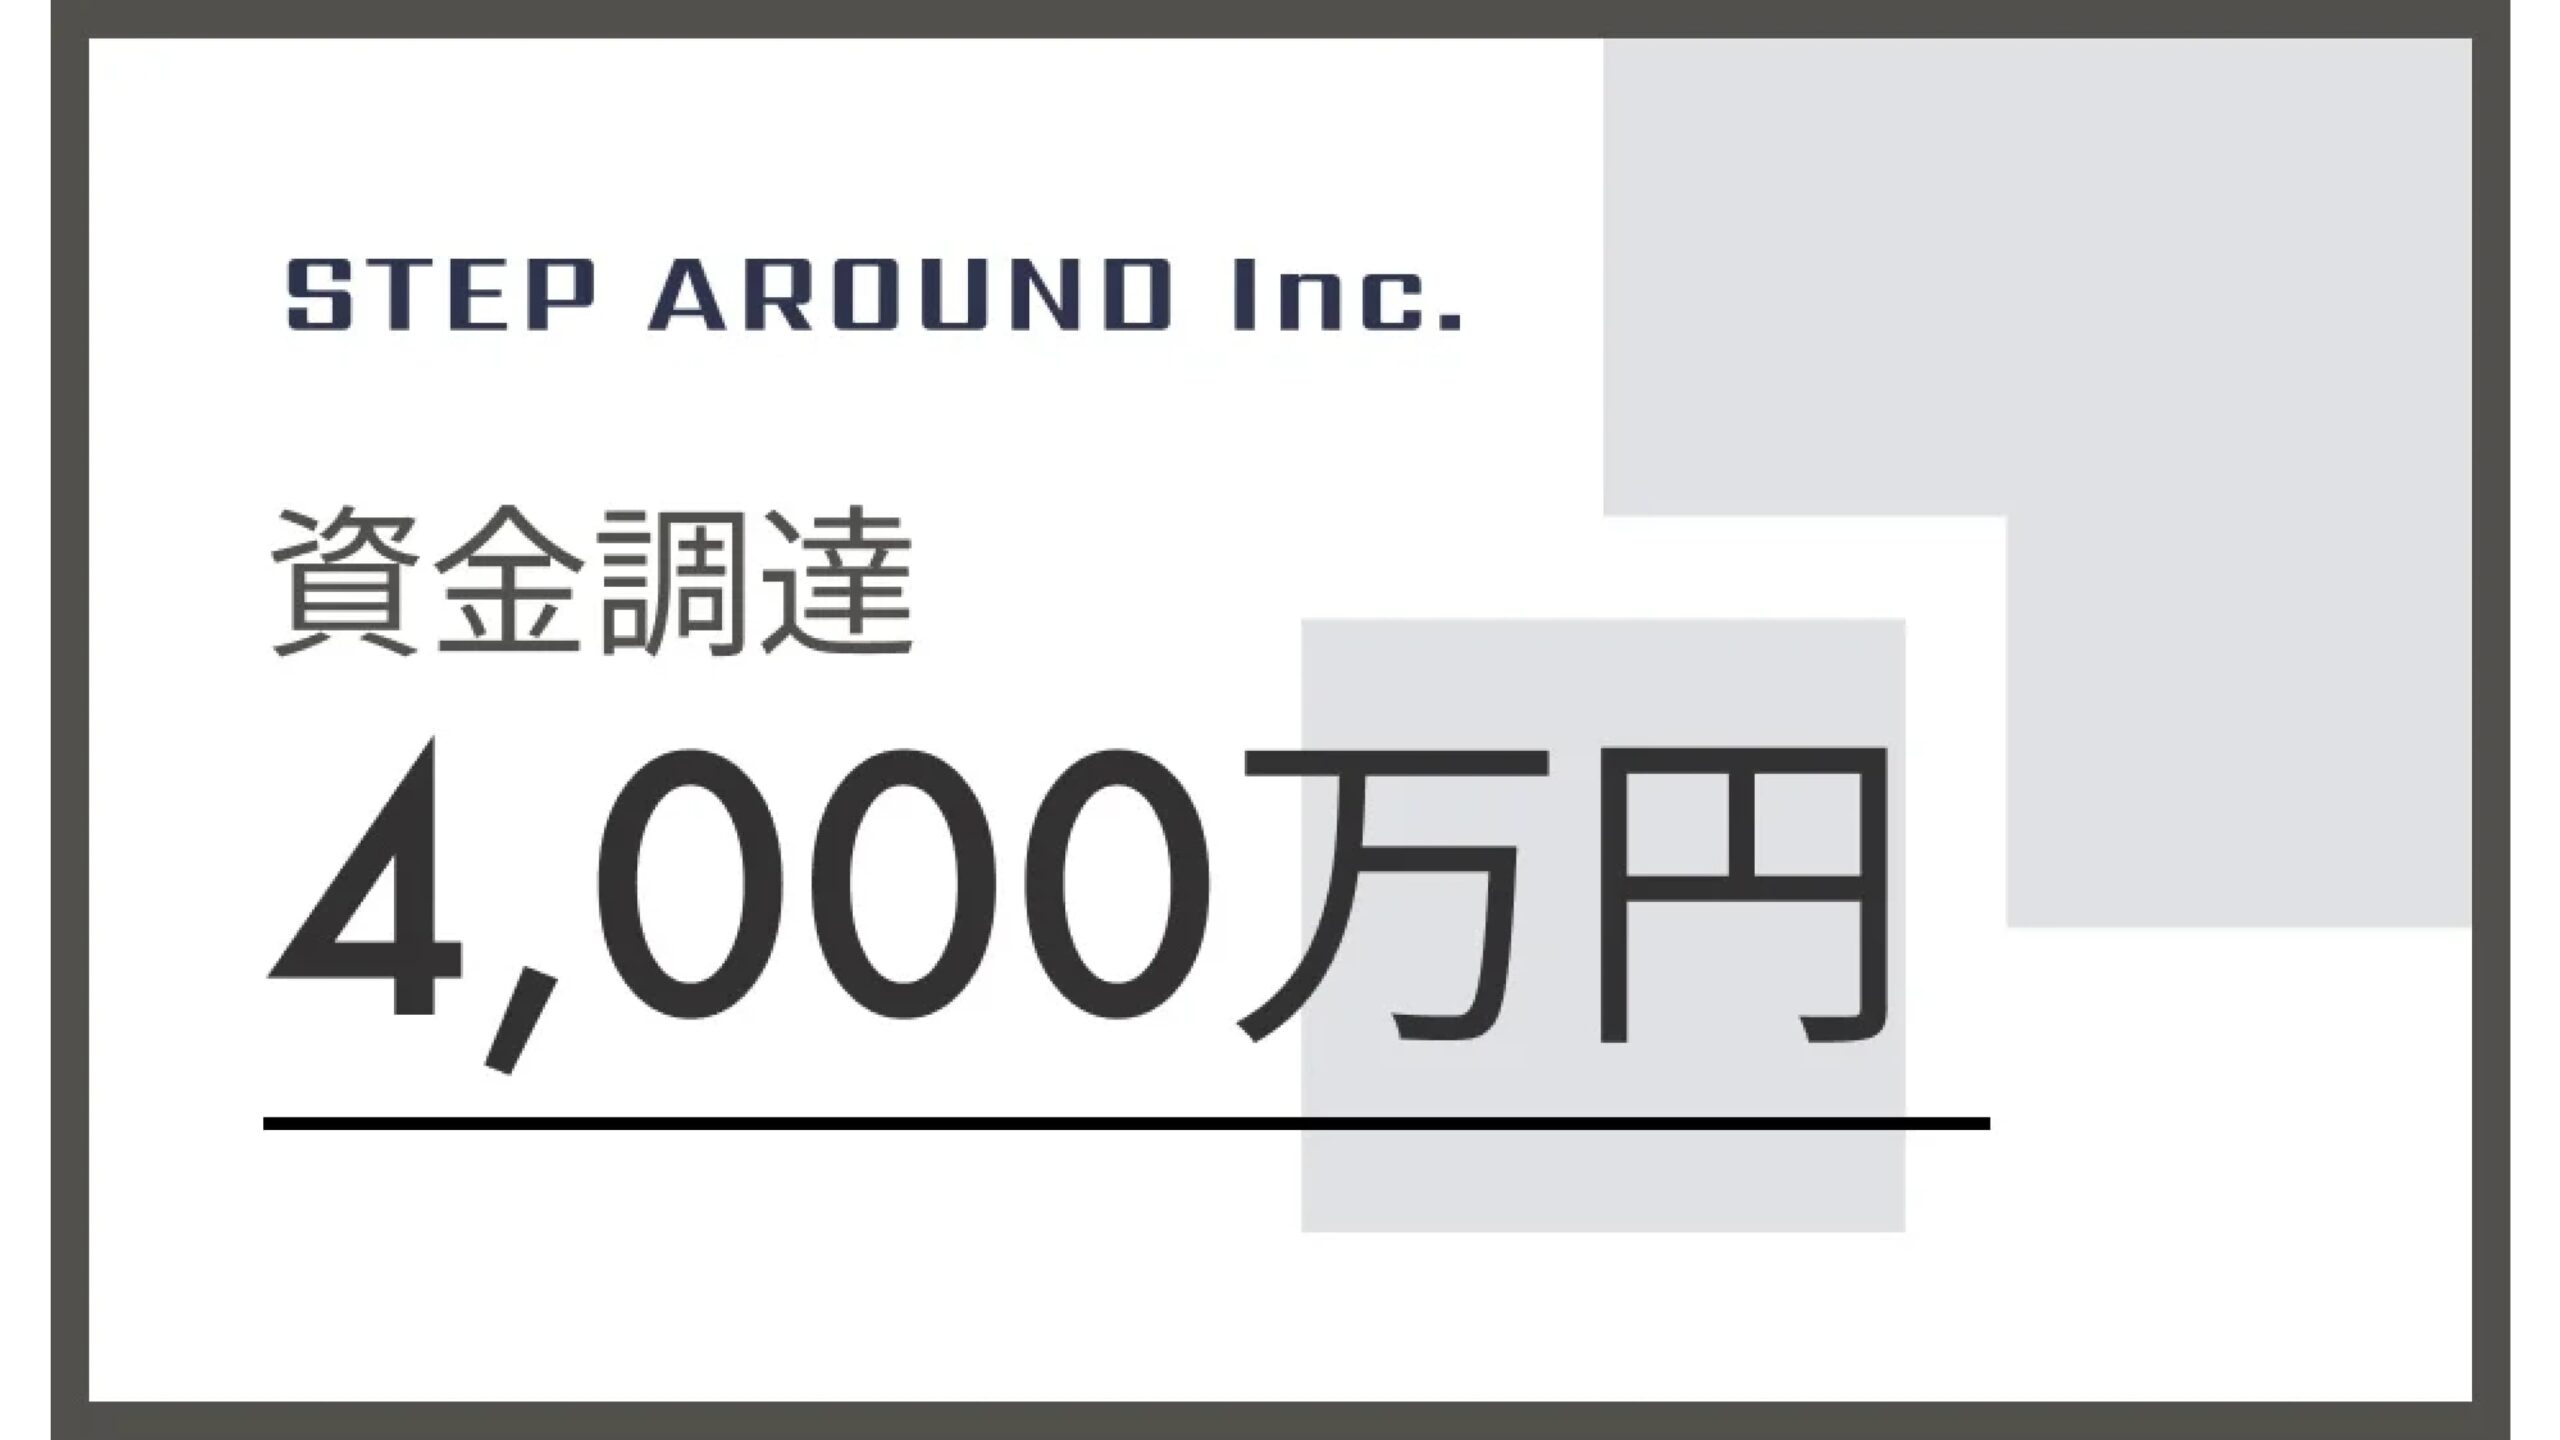 東京・世田谷のステップ・アラウンド、日本政策金融公庫他1行との協調融資で4,000万円を調達